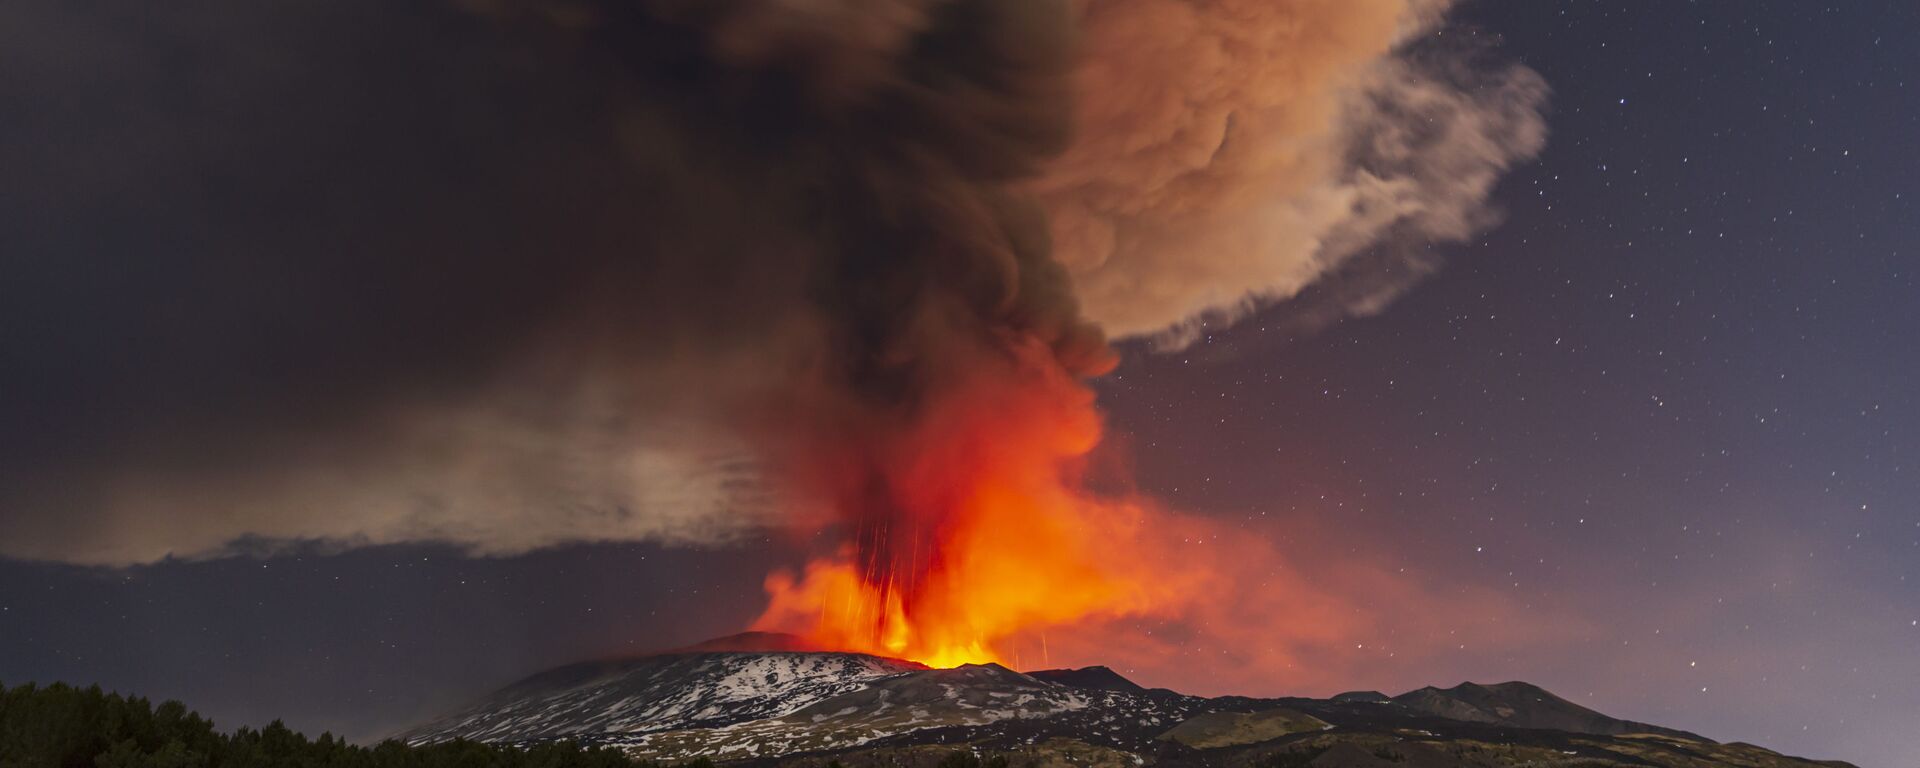 Вид на извержение вулкана Этна с сицилийской коммуны Николози, Италия - Sputnik Казахстан, 1920, 25.07.2022